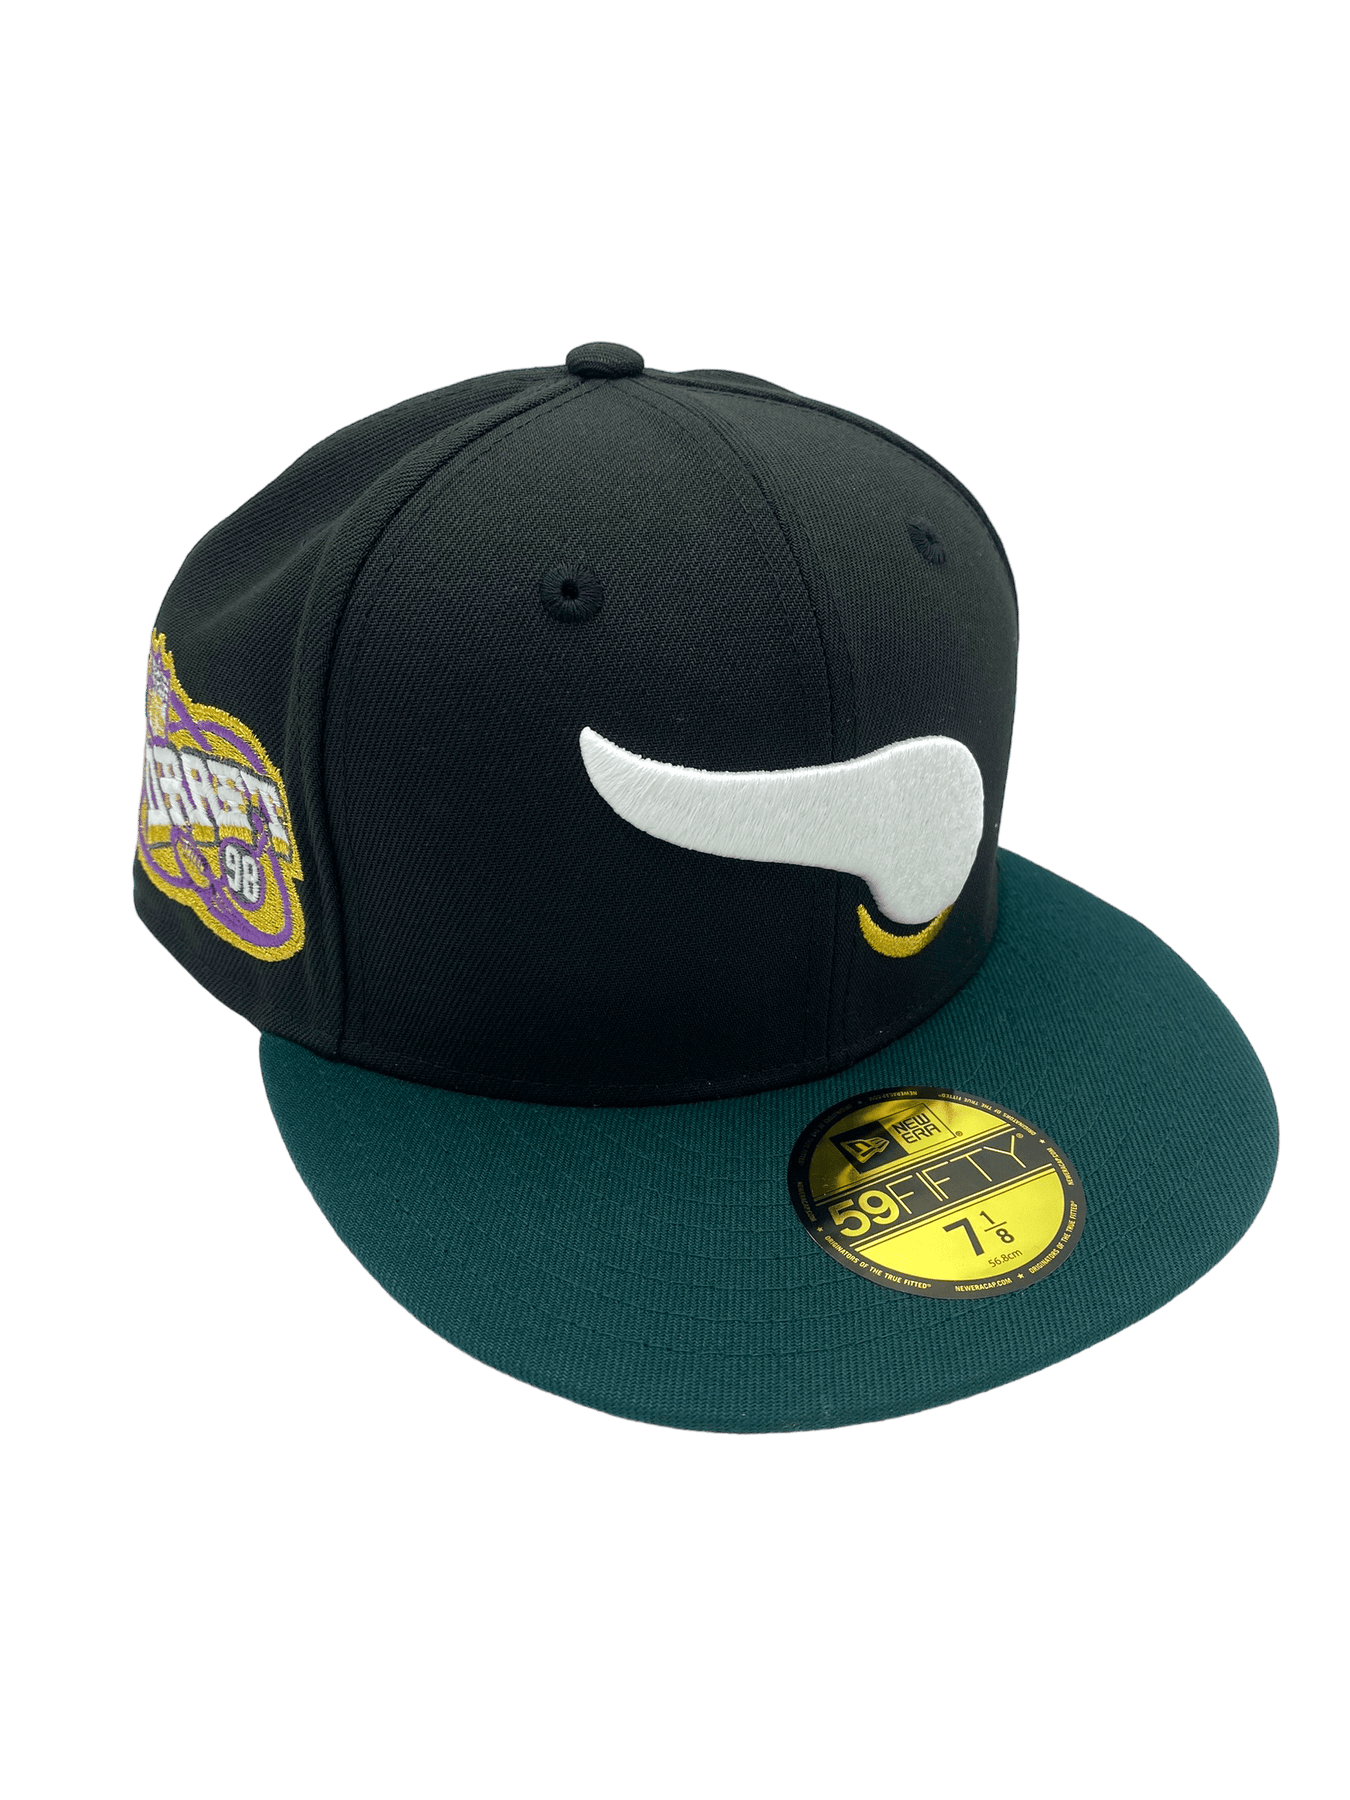 Custom Minnesota Vikings Hats